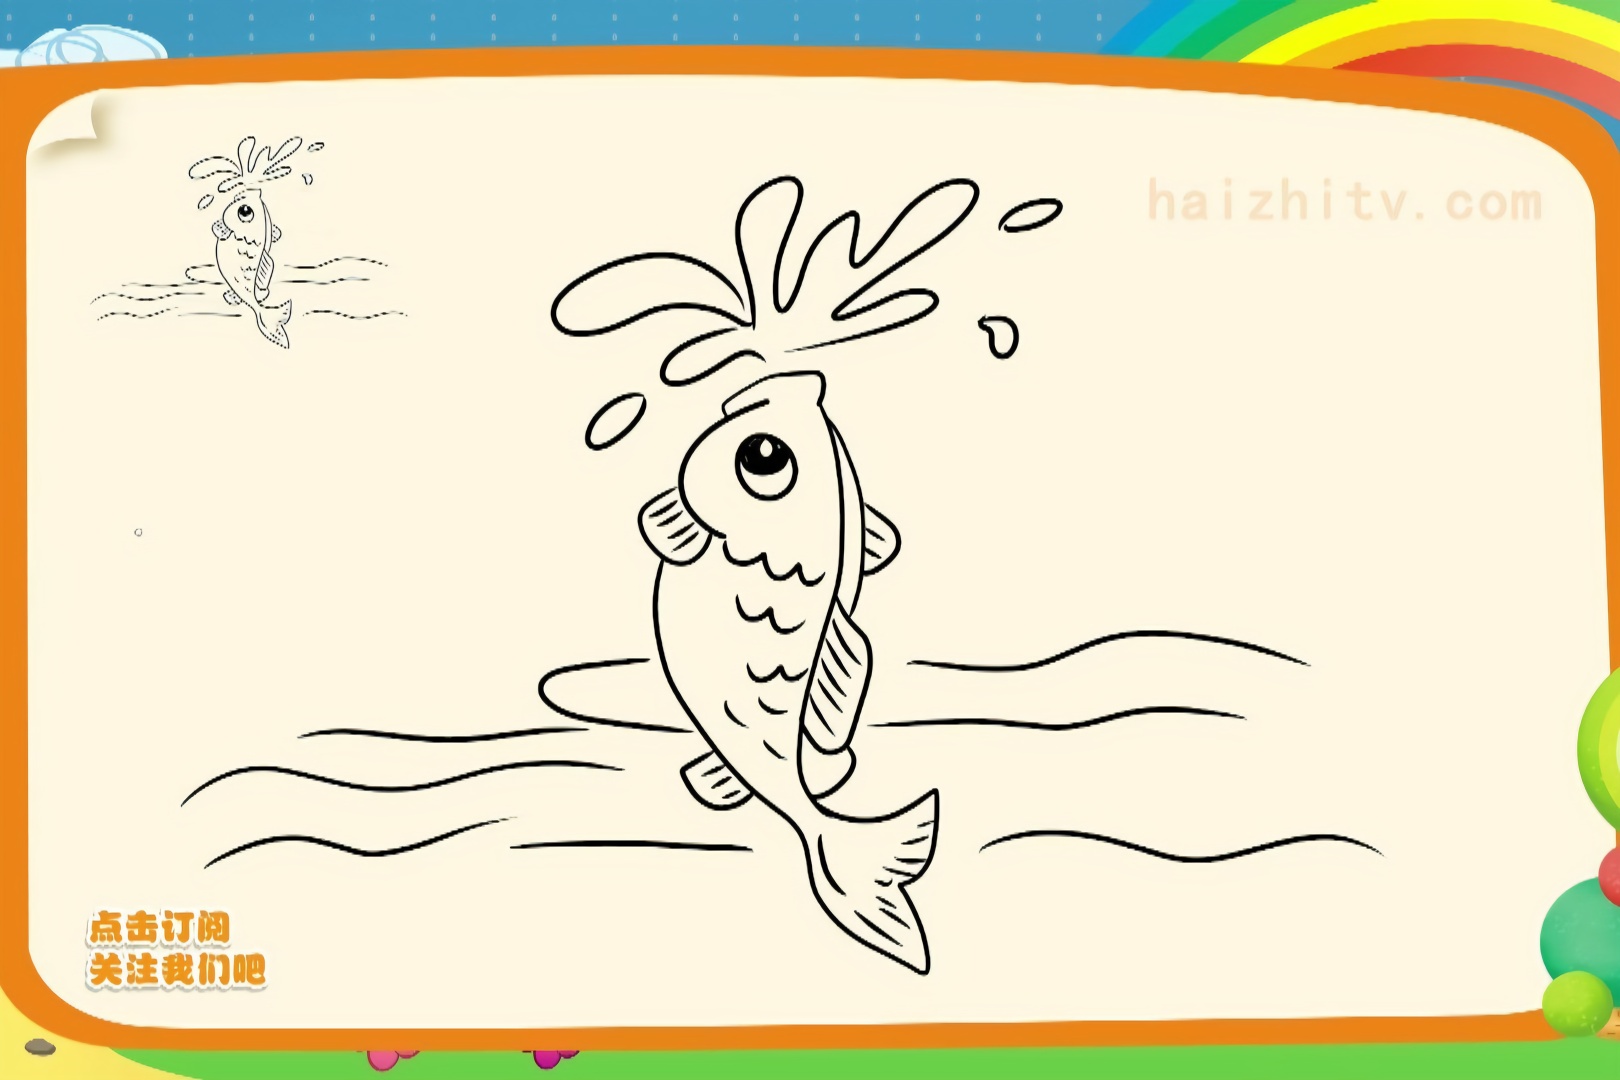 鱼游动的简笔画图片